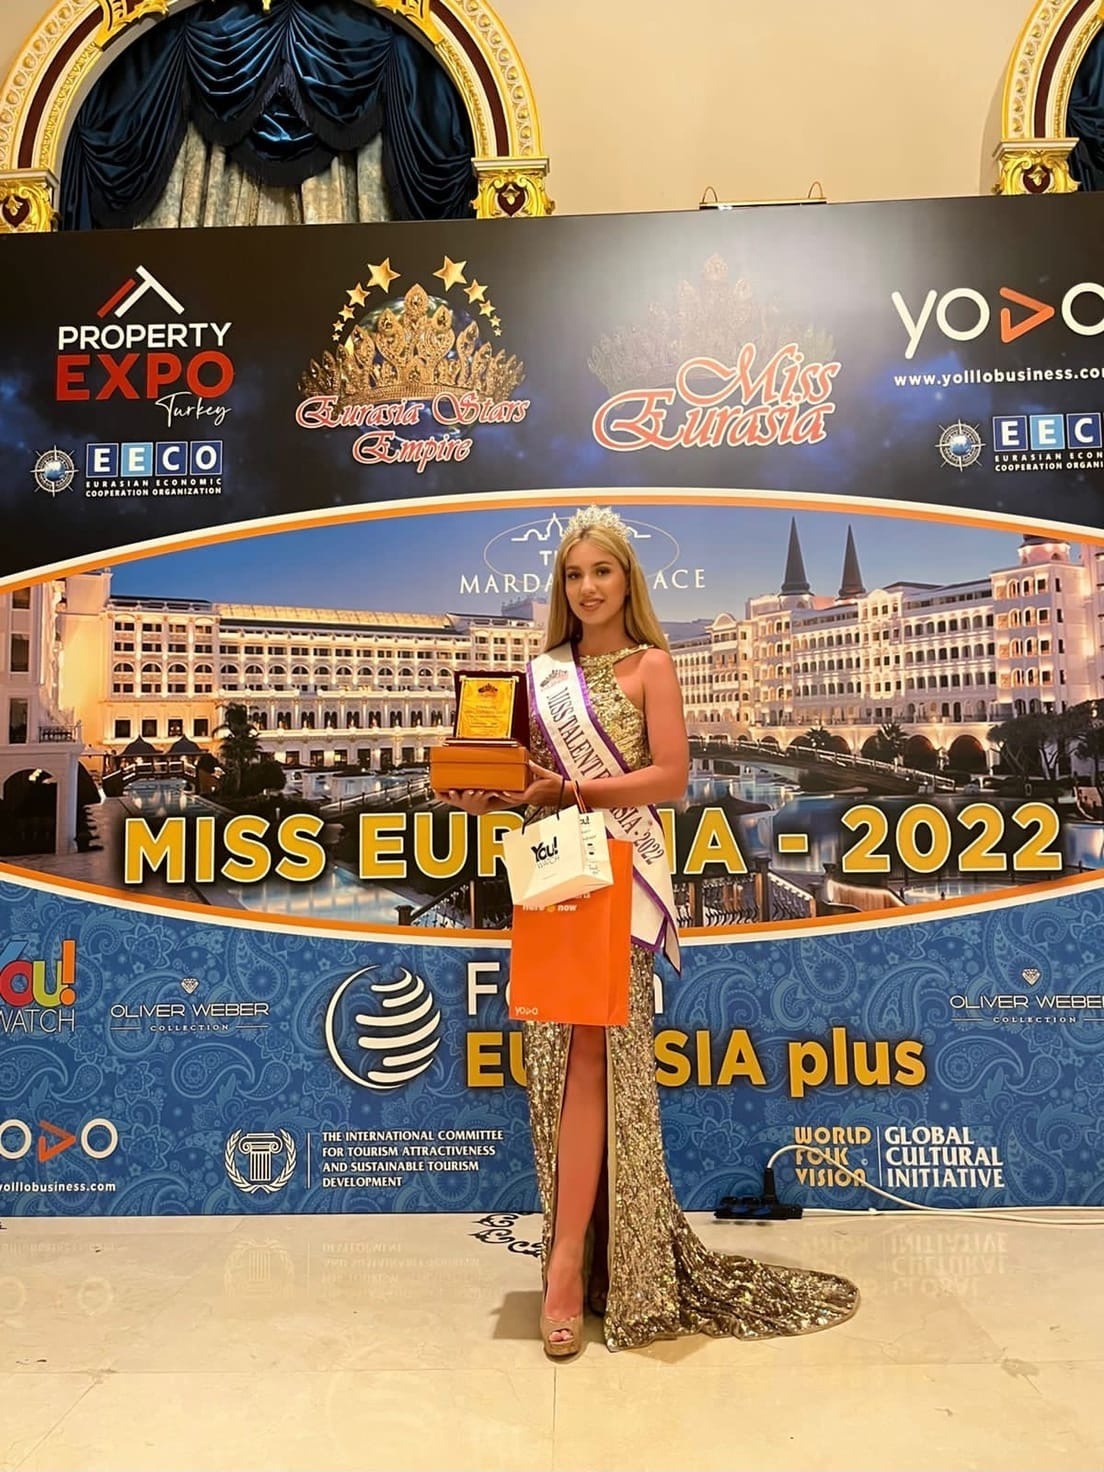 Мисс европа второе место. Миссис Евразия 2022. Победительница конкурса красоты. Мисс Европа 2019. Международный конкурс красоты 2022.